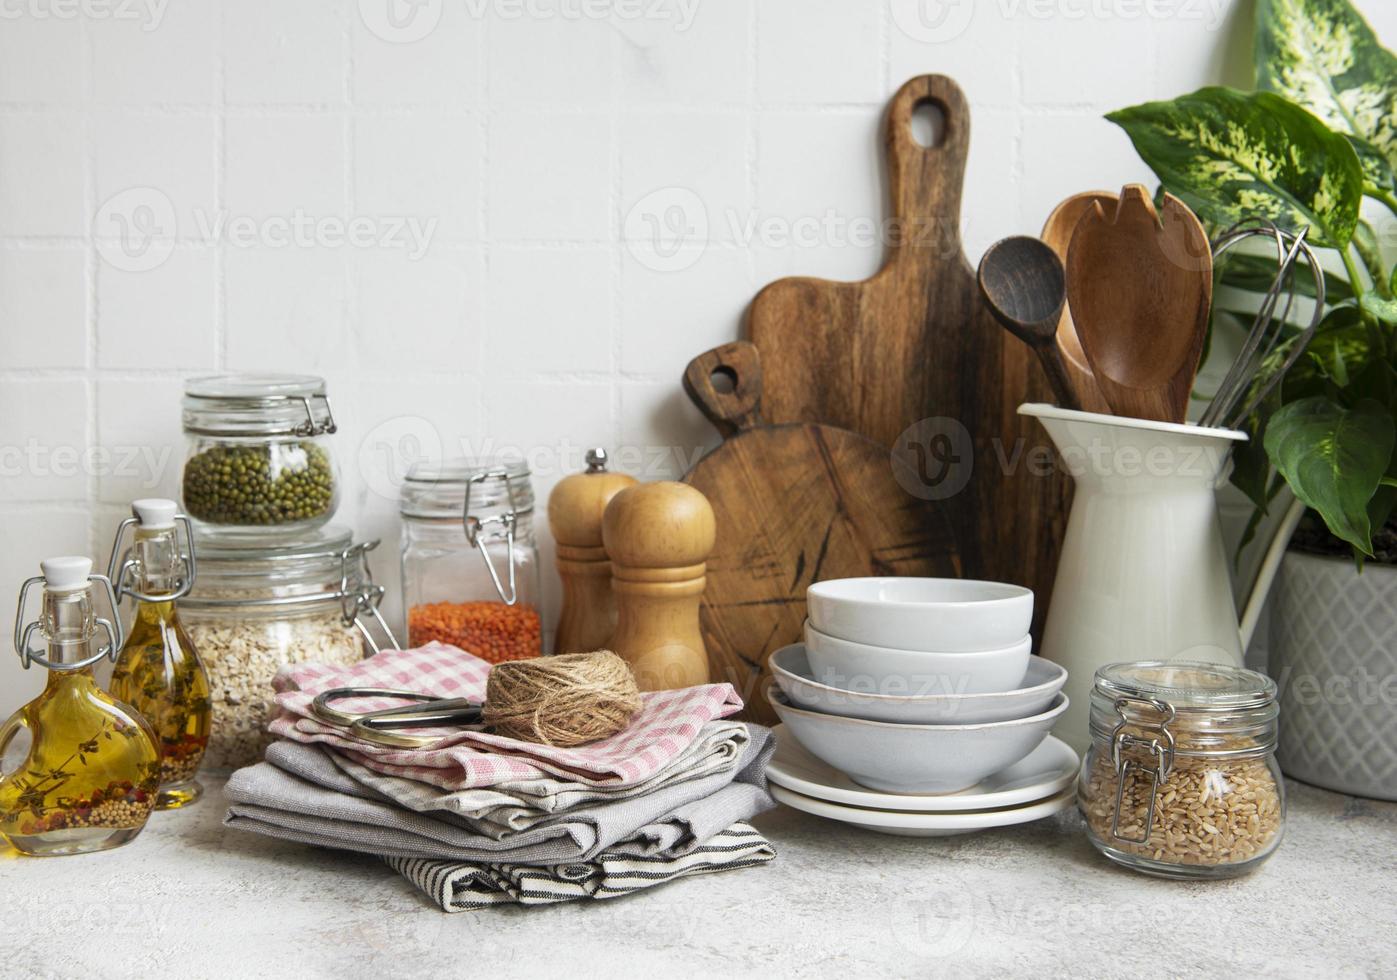 utensilios de cocina, herramientas y vajilla en la pared de azulejos blancos de fondo. foto